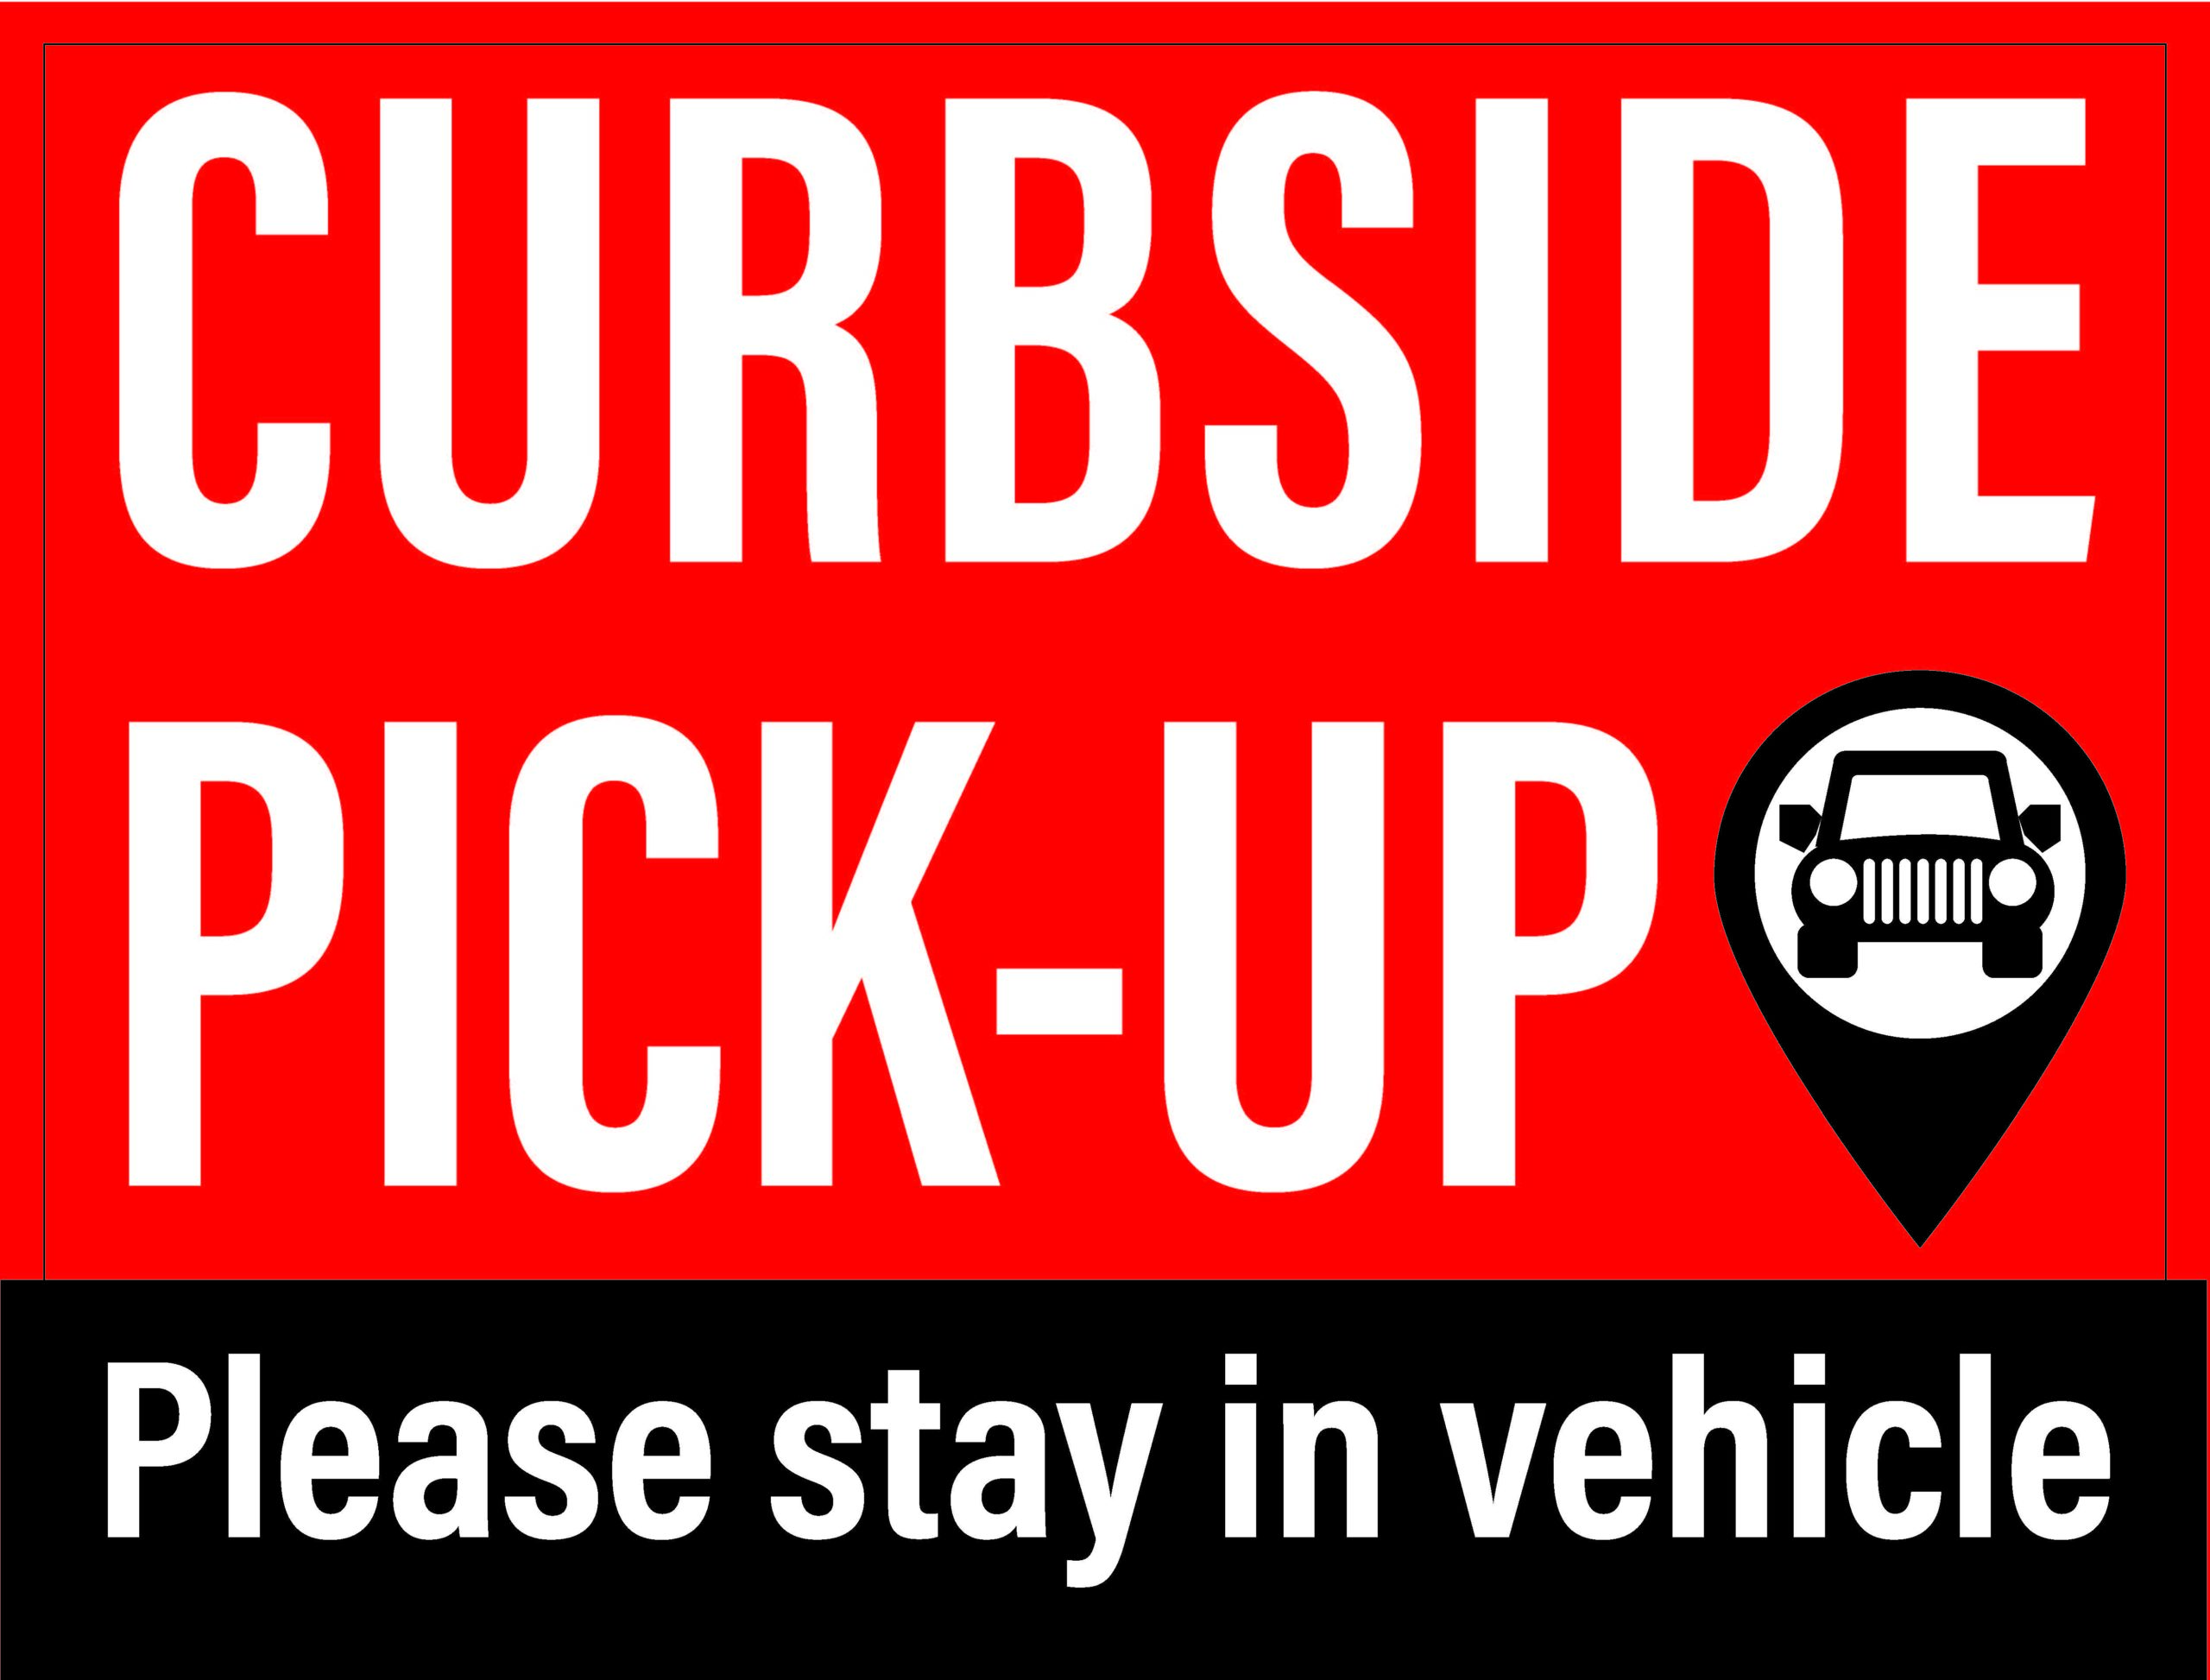 Curbside Pickup 18" x 24" (Coroplast w/ stake)